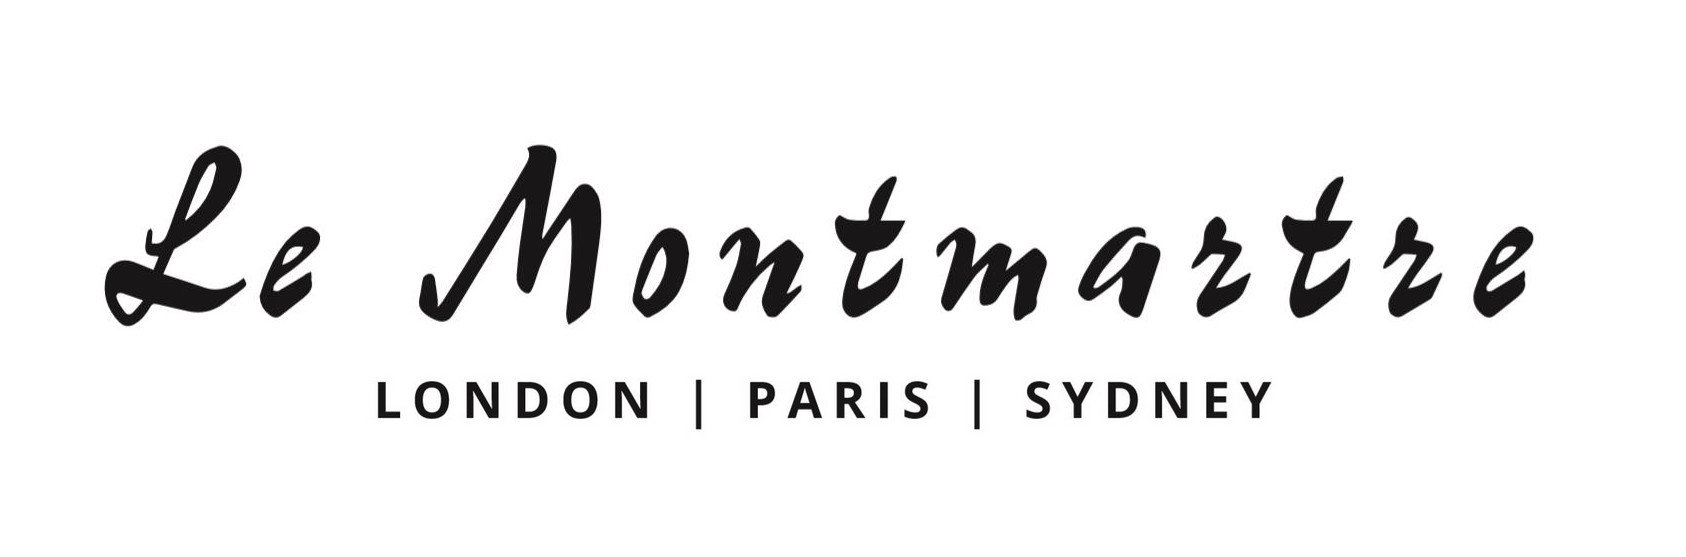 logo for Le Montmartre